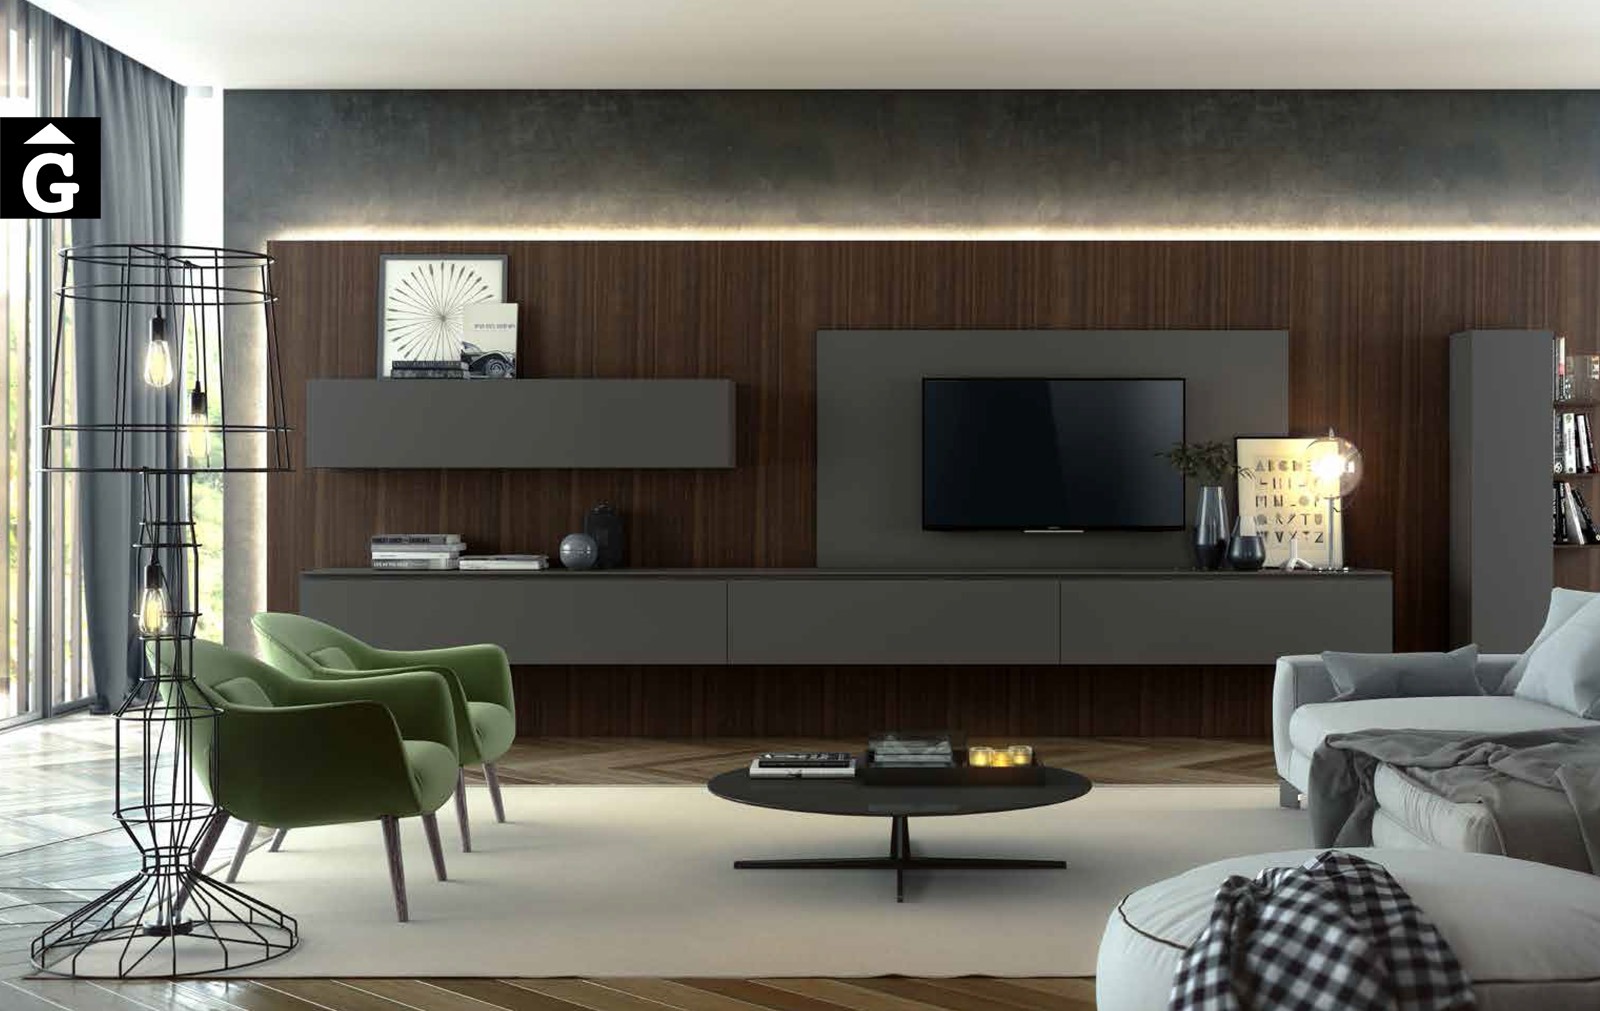 19 0 Area mobles Ciurans per mobles Gifreu programa modular disseny atemporal realitzat amb materials i ferratges de qualitat estil modern minimal